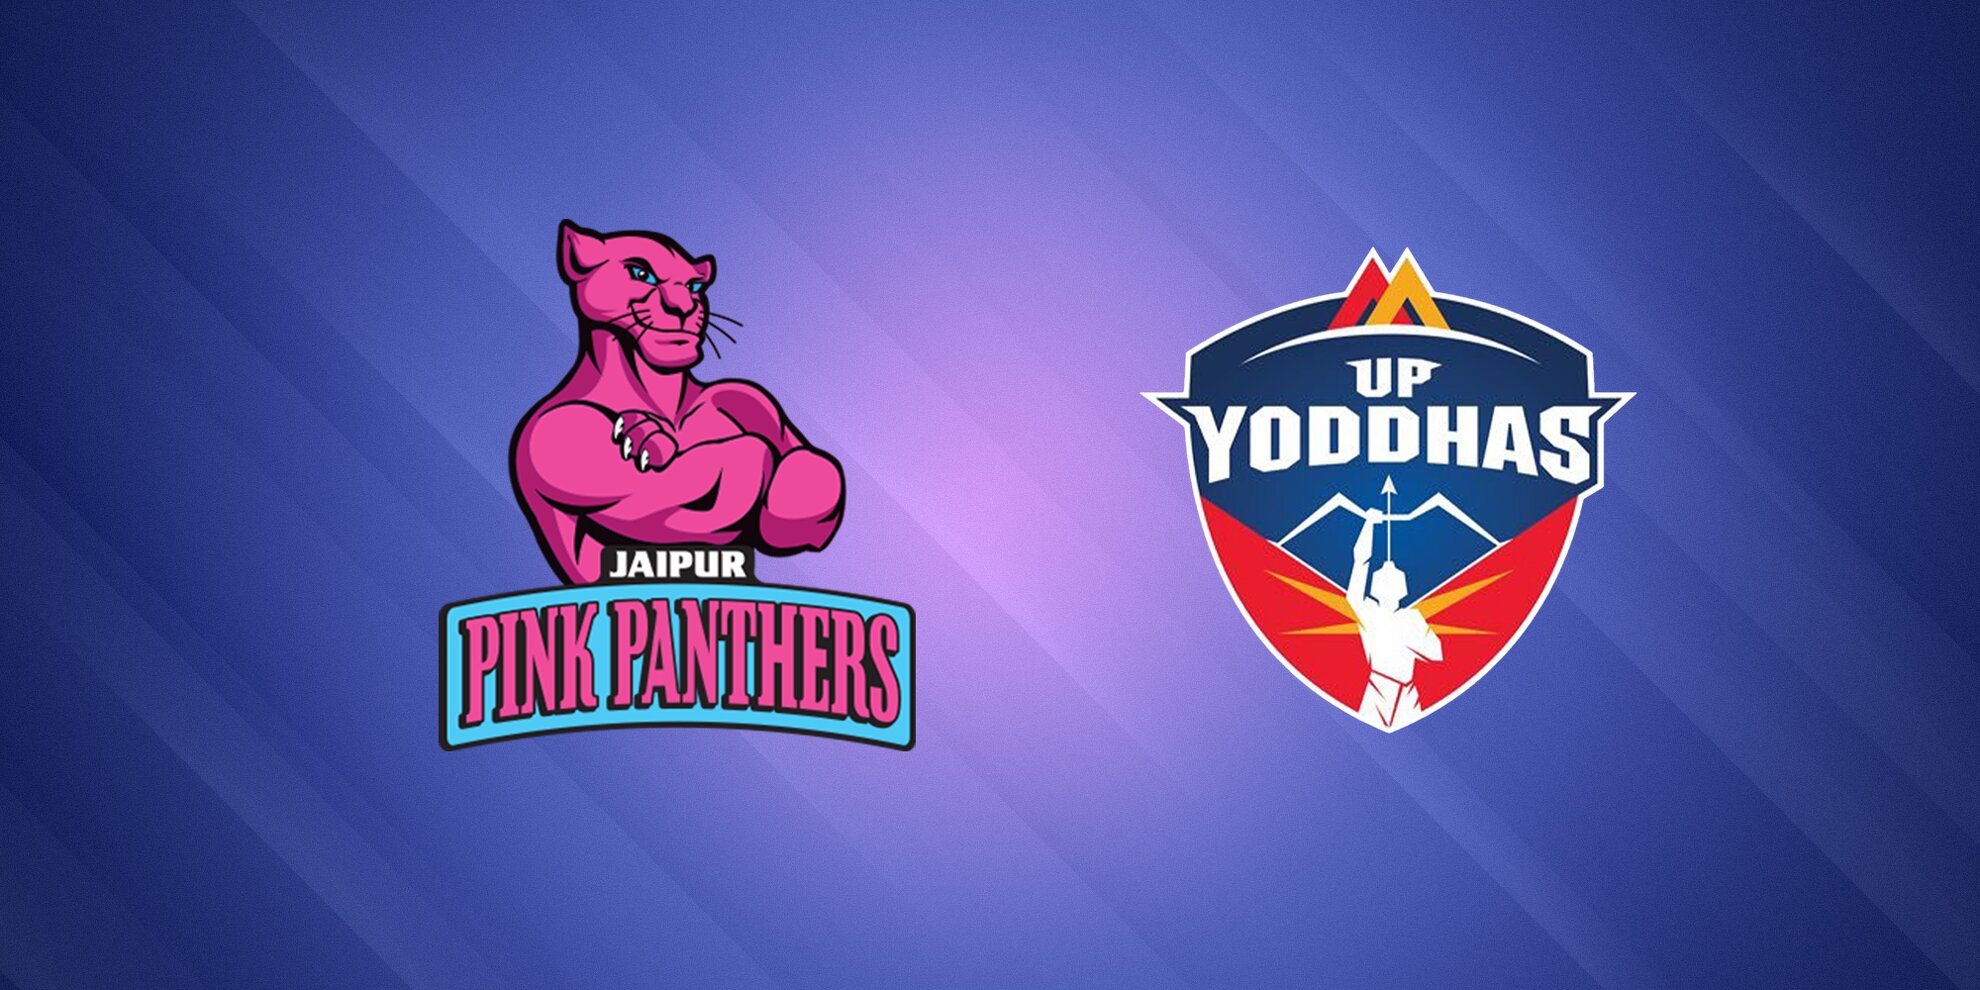 UP Yoddha vs Jaipur Pink Panthers